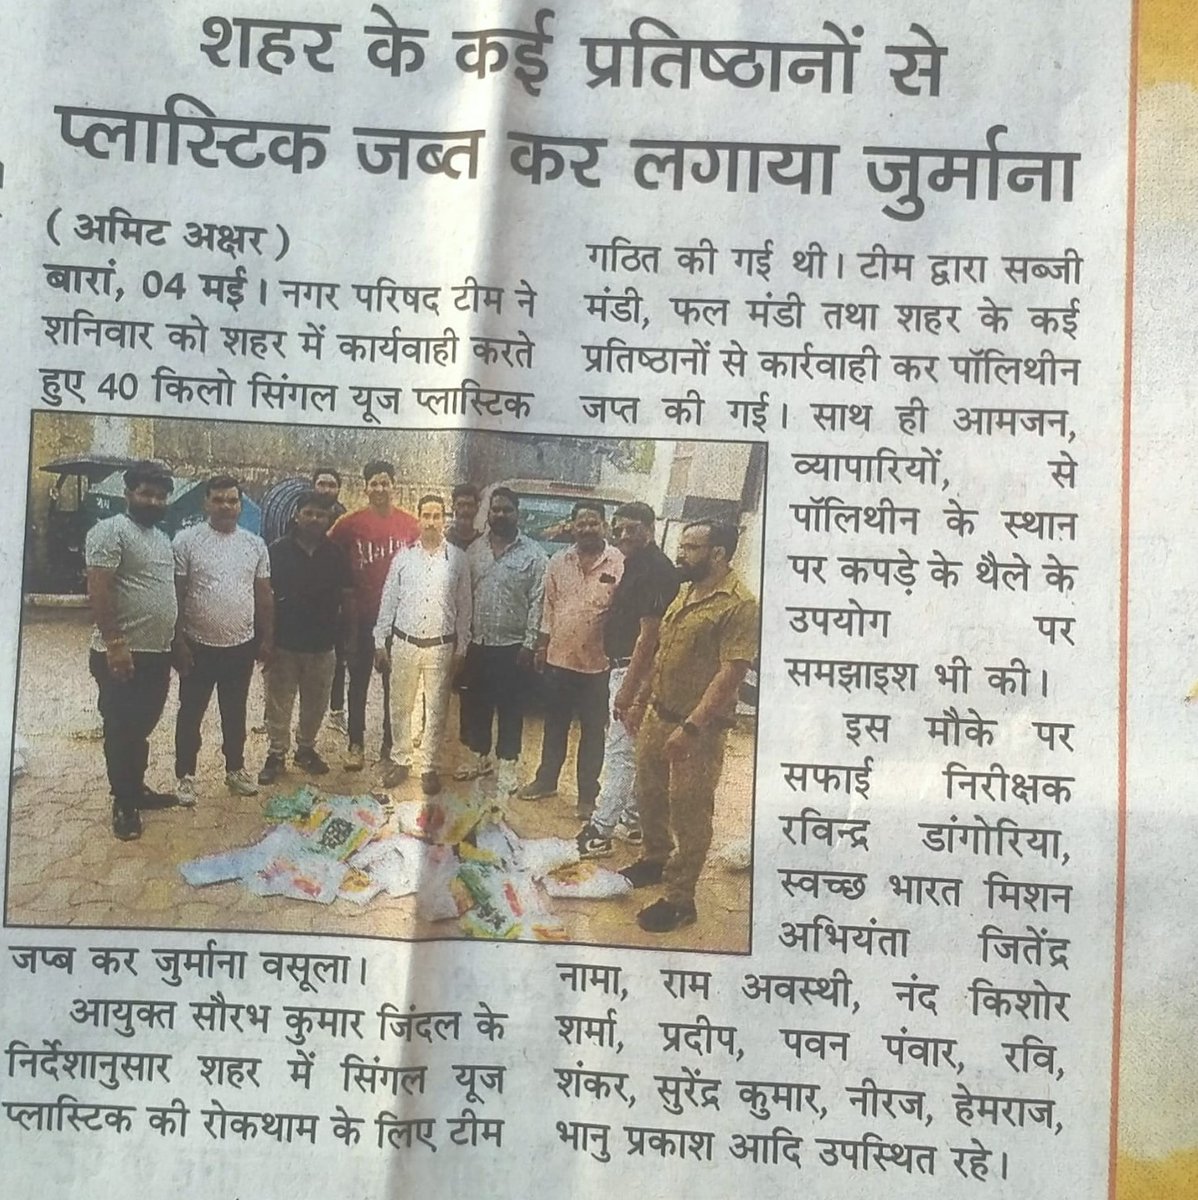 शहर के कई प्रतिष्ठानों से प्लास्टिक जब्त कर लगाया जुर्माना
नगर परिषद टीम ने शनिवार को शहर में कार्यवाही करते हुए 40 किलो सिंगल यूज प्लास्टिक जप्त कर ज़ुर्माना वसूला |
#plasticban
@PMOIndia
@LSG_Rajasthan
@PMU_SBM_RAJ